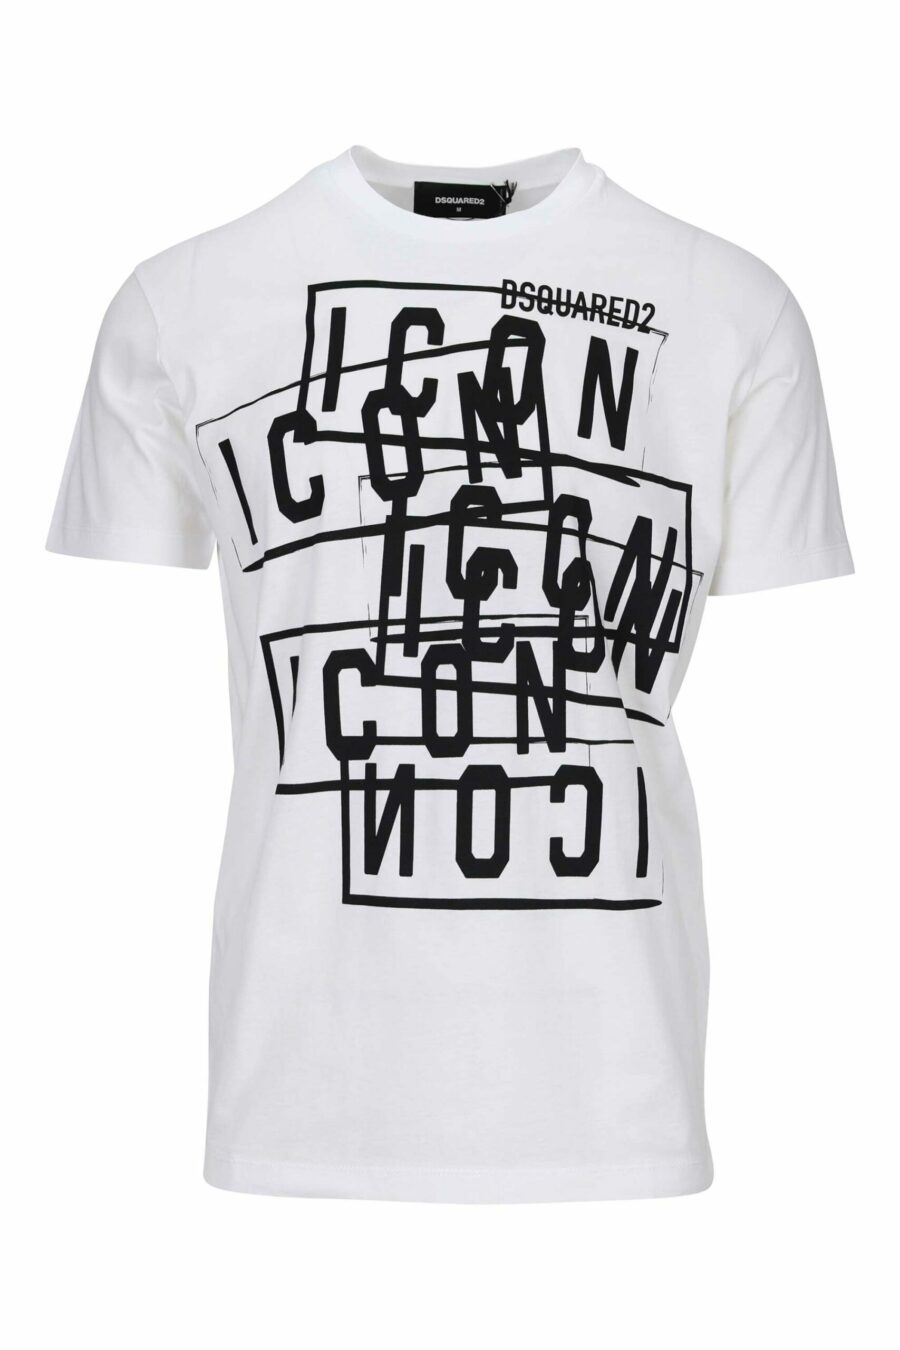 T-shirt blanc avec logo "icon" tamponné - 8054148362676 à l'échelle